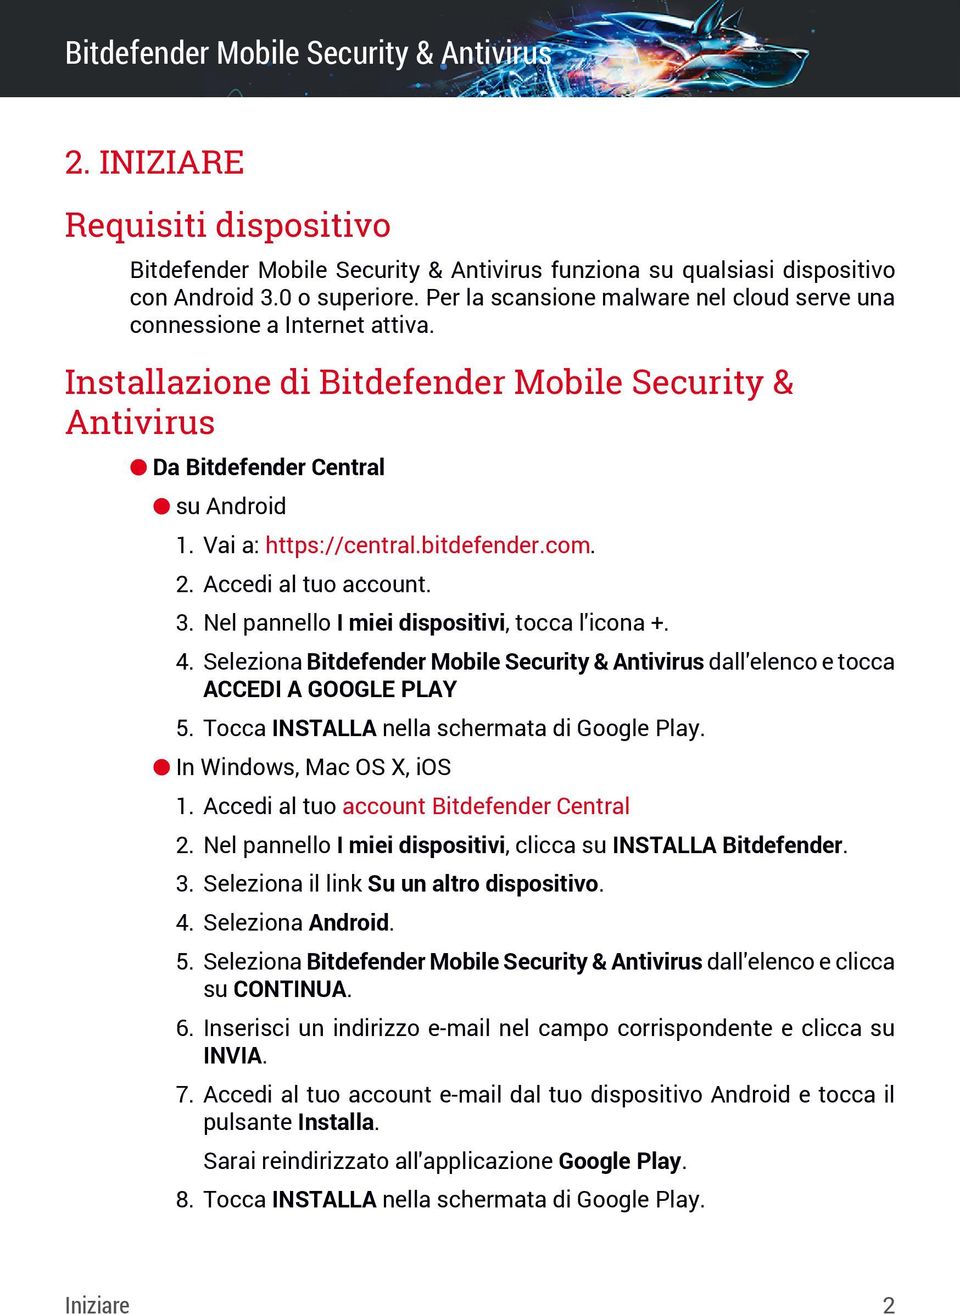 bitdefender.com. 2. Accedi al tuo account. 3. Nel pannello I miei dispositivi, tocca l'icona +. 4. Seleziona Bitdefender Mobile Security & Antivirus dall'elenco e tocca ACCEDI A GOOGLE PLAY 5.